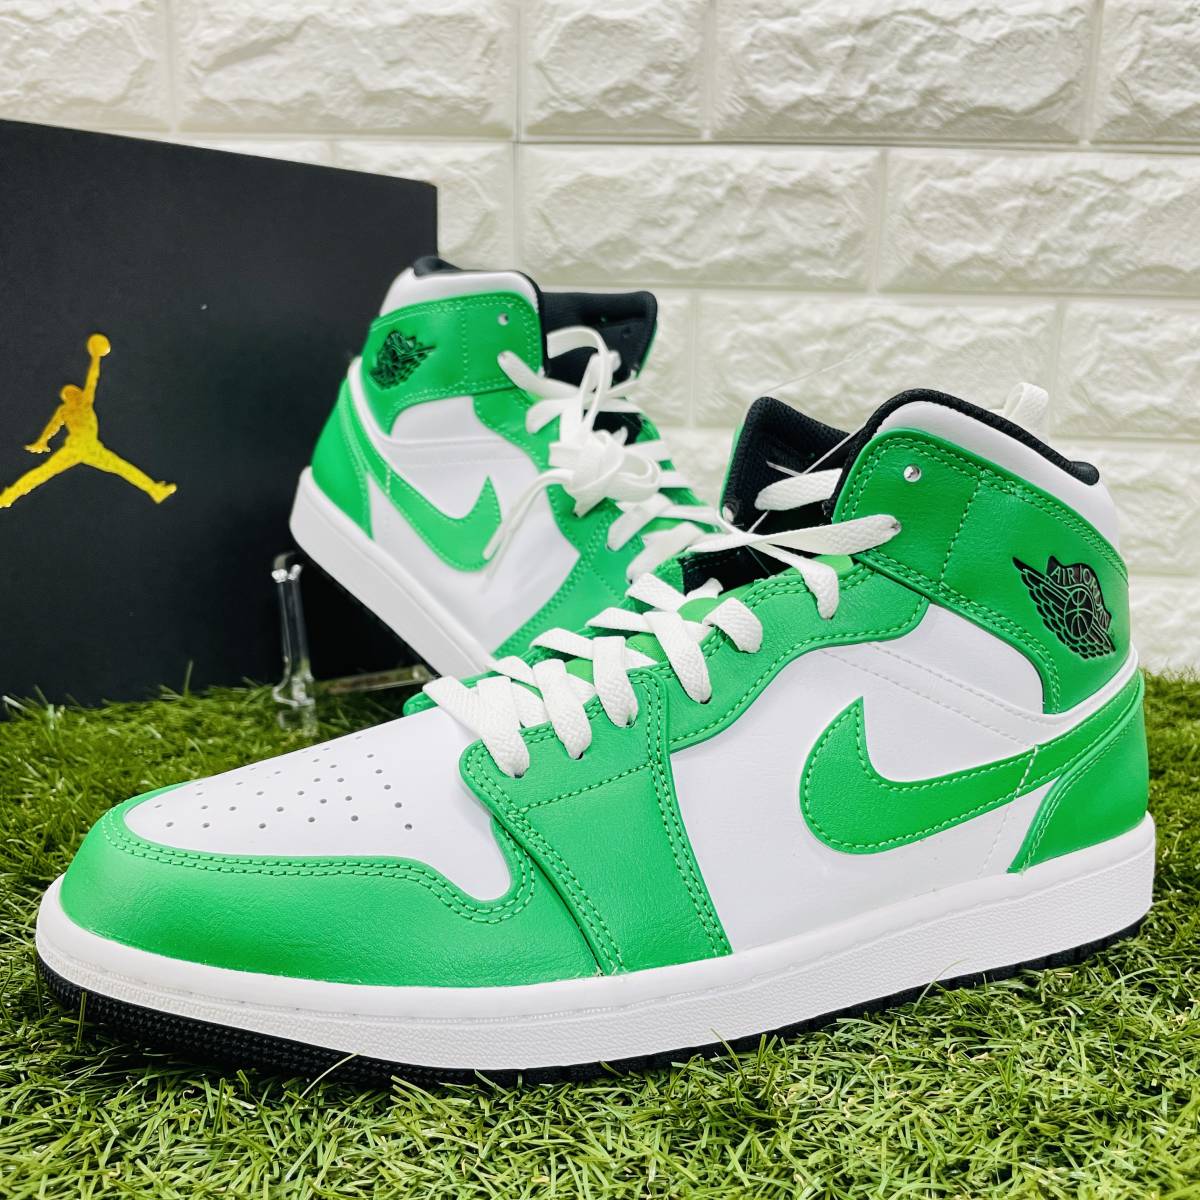  быстрое решение Nike воздушный Jordan 1 mid Nike Air Jordan 1 MID AJ1 зеленый белый чёрный мужской 29.5cm включая доставку DQ8426-301